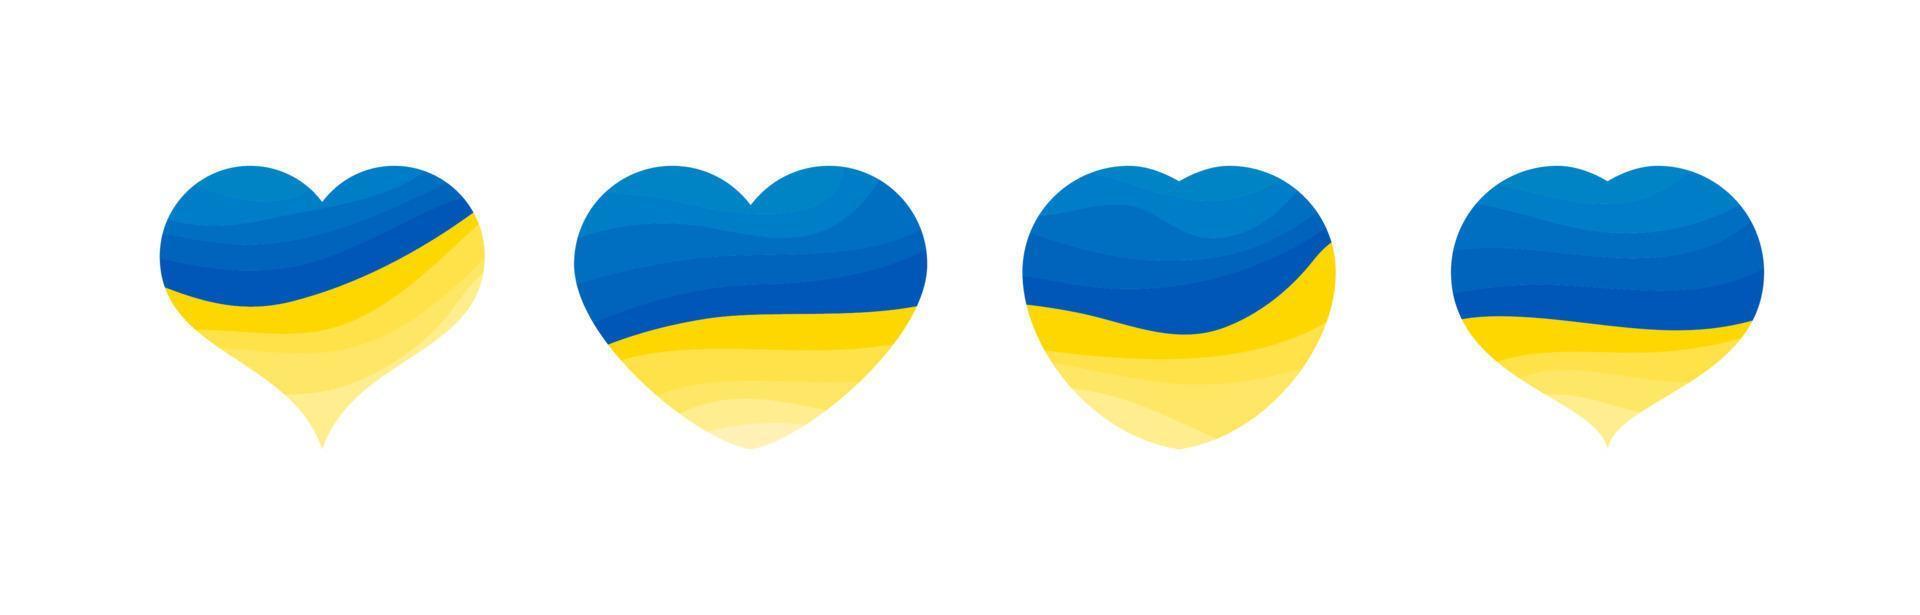 reeks van harten in oekraïens kleuren vector